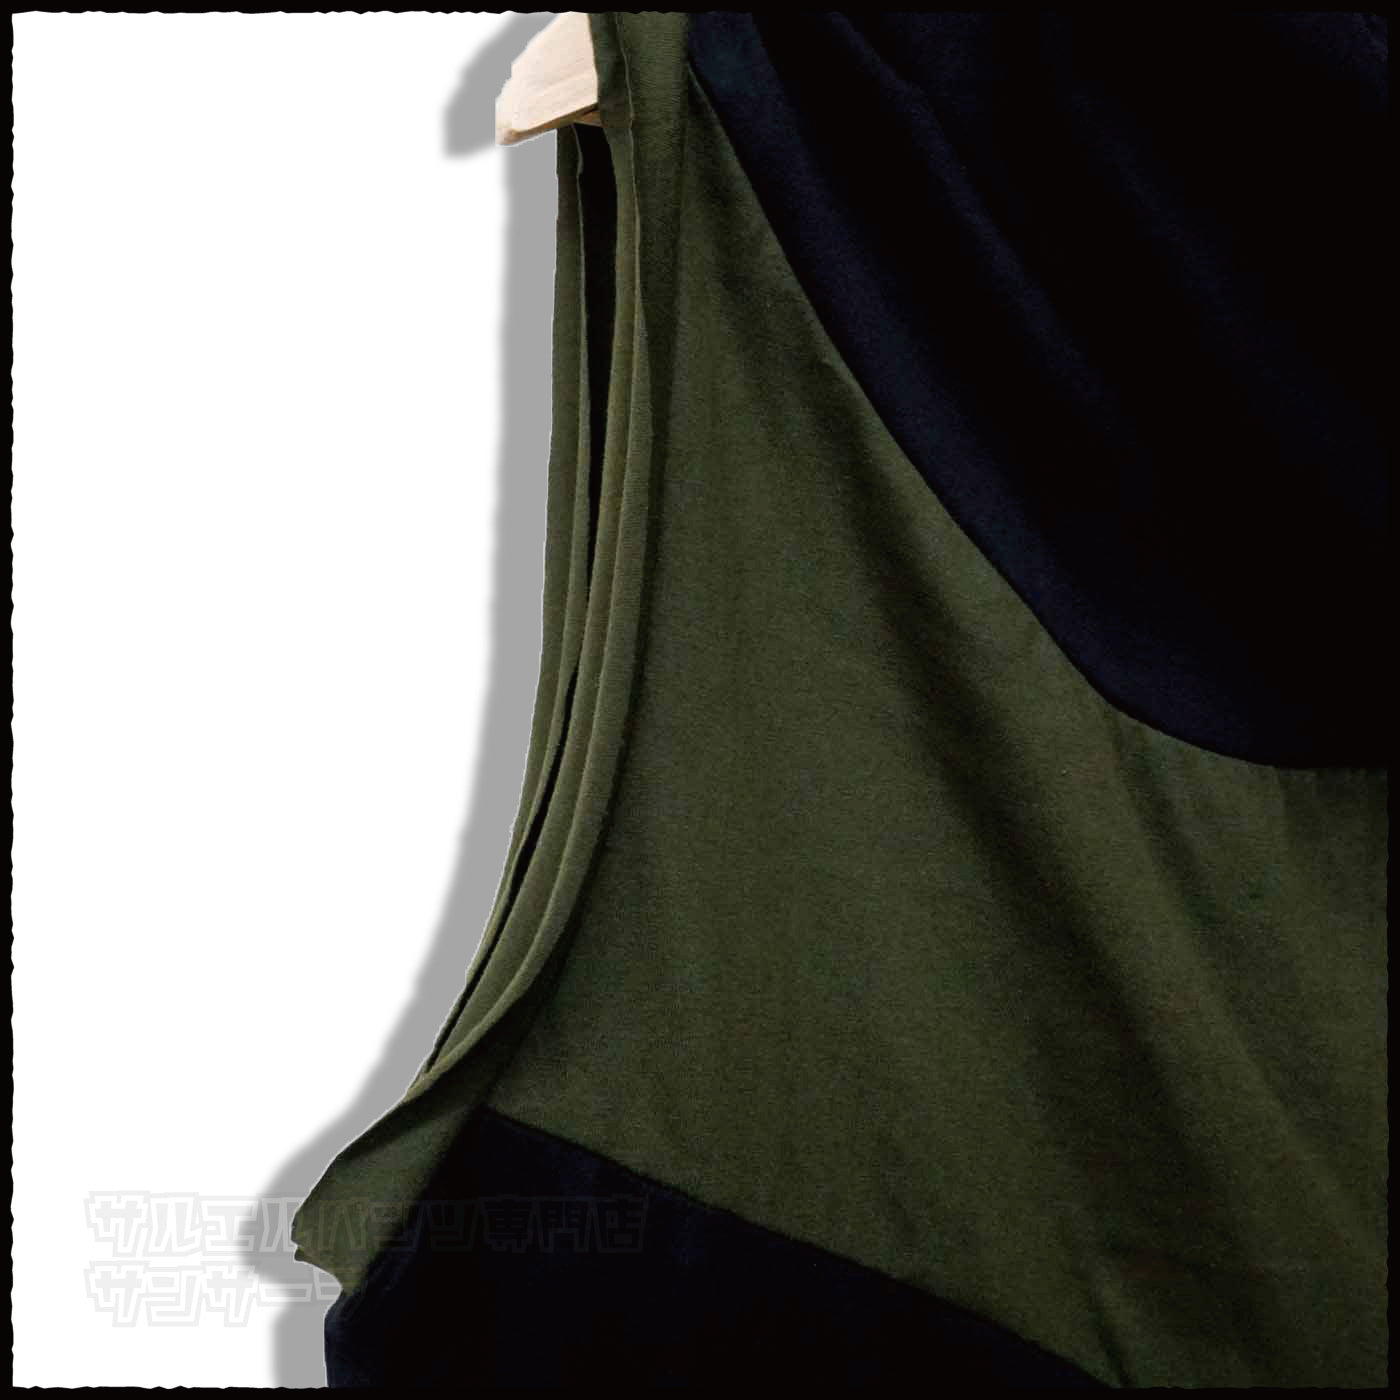 ベスト タンクトップ ノースリーブ Tシャツ オフタートル メンズ レディース モード系 V系 サロン系 黒 変形アウター 半袖 韓国 ストリート ファッション